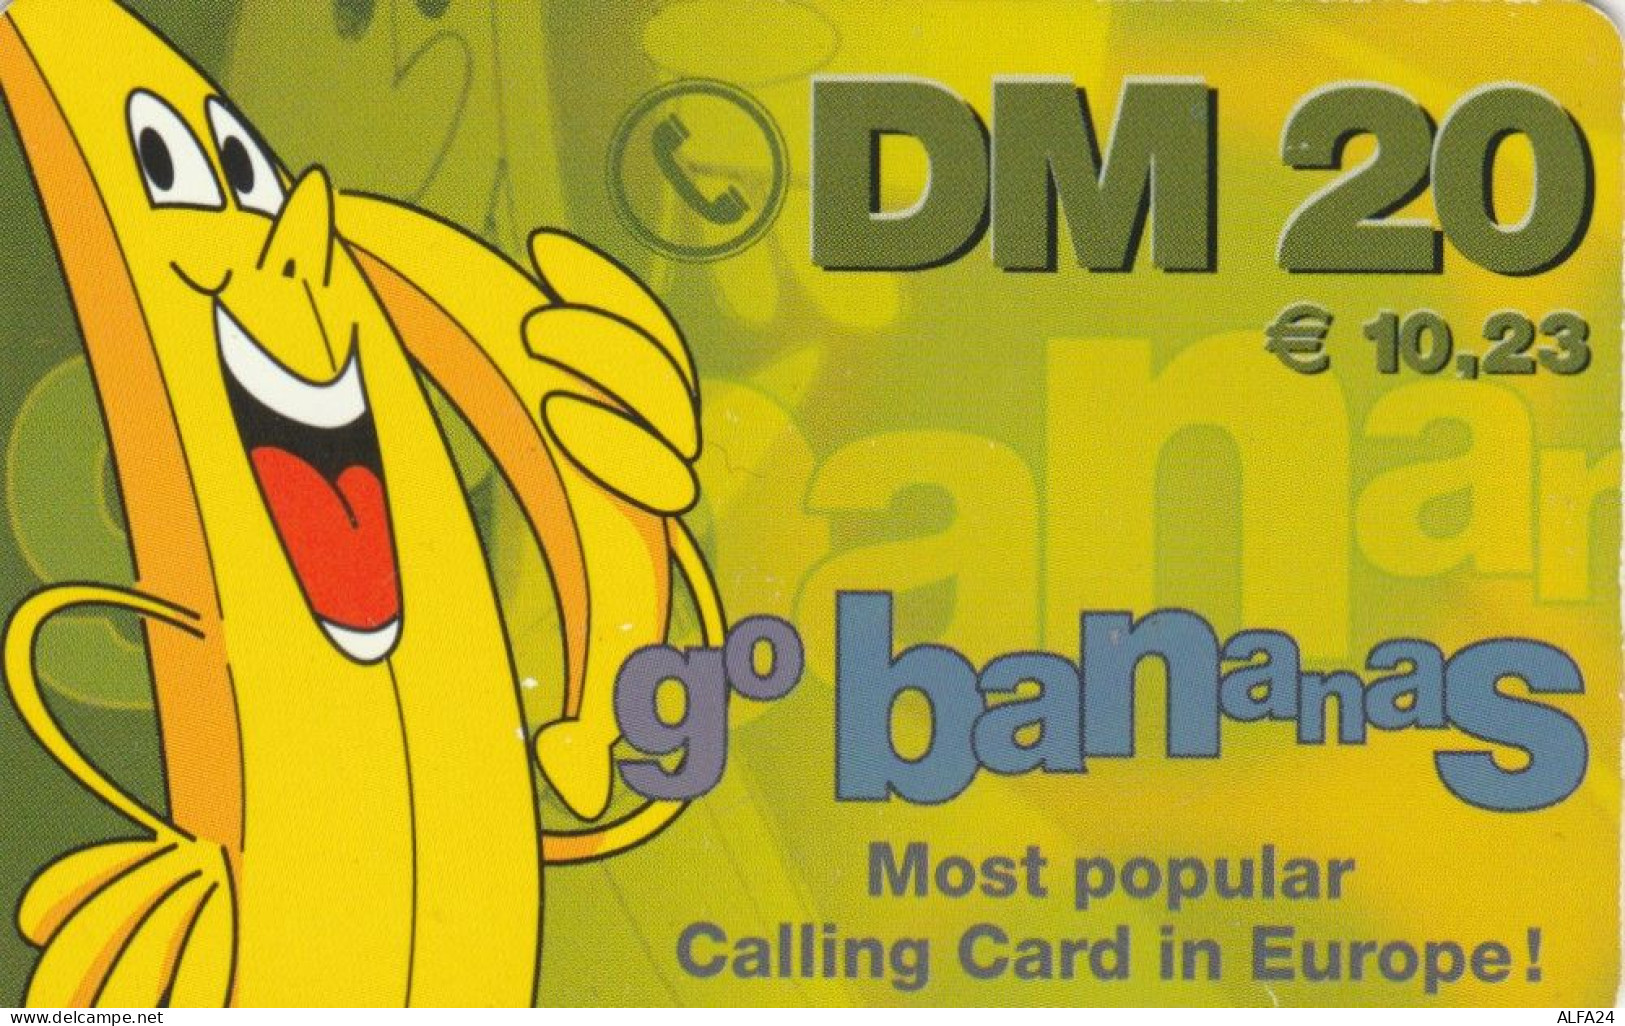 PREPAID PHONE CARD GERMANIA  (PM2382 - [2] Prepaid